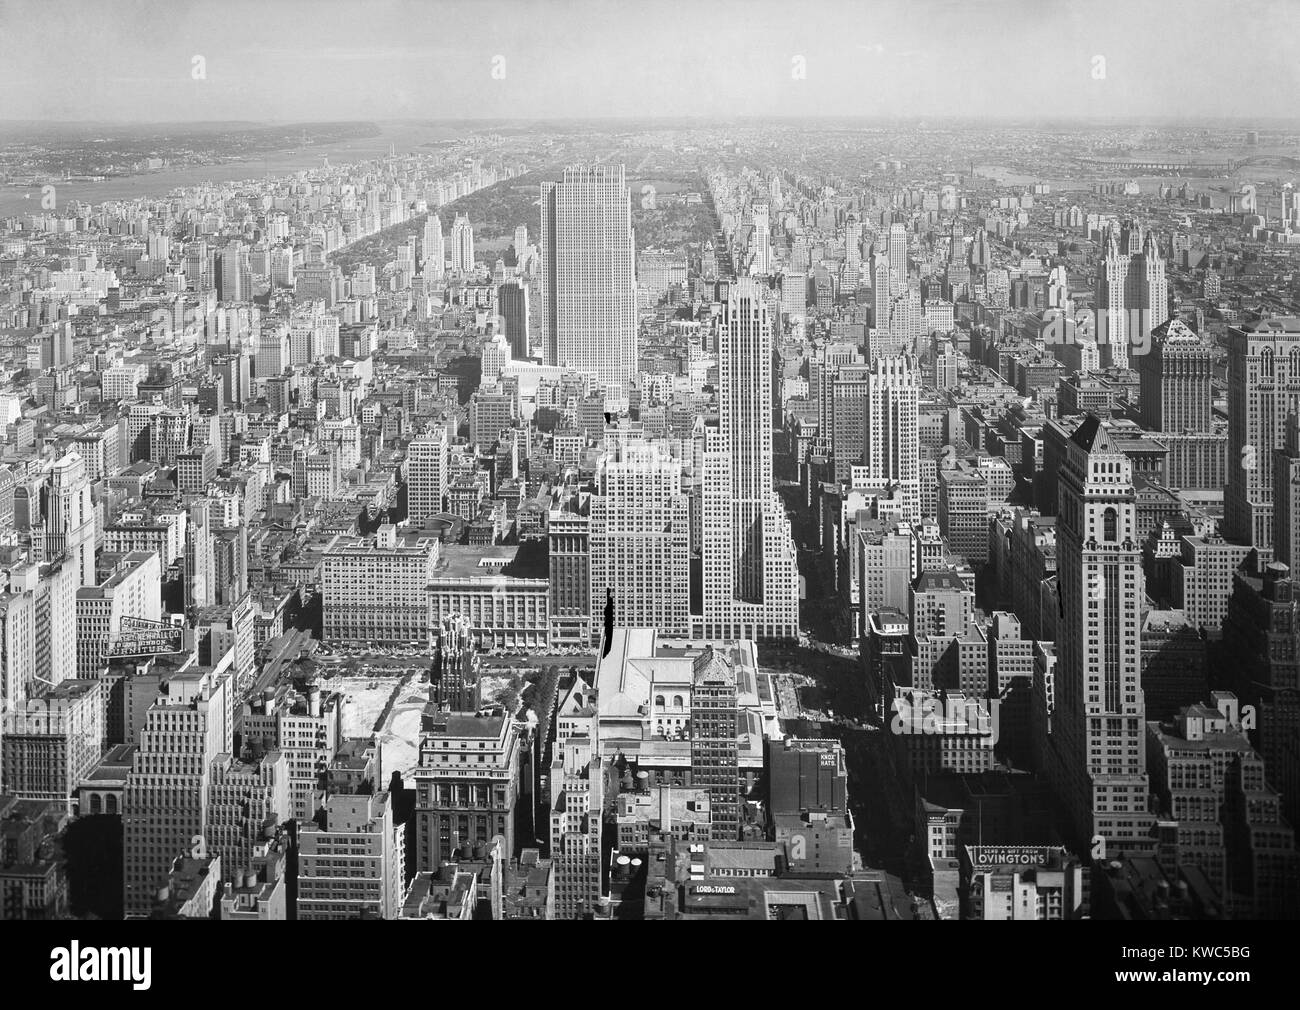 Blick nach Norden von der NYC Empire State Building, enthält das neue RCA-Gebäude. Sept. 11, 1933. Darüber hinaus sind die Upper West- und Ostseite, direkt angrenzend an den Central Park. Foto von Samuel H. Gottscho. (BSLOC 2015 14 204) Stockfoto